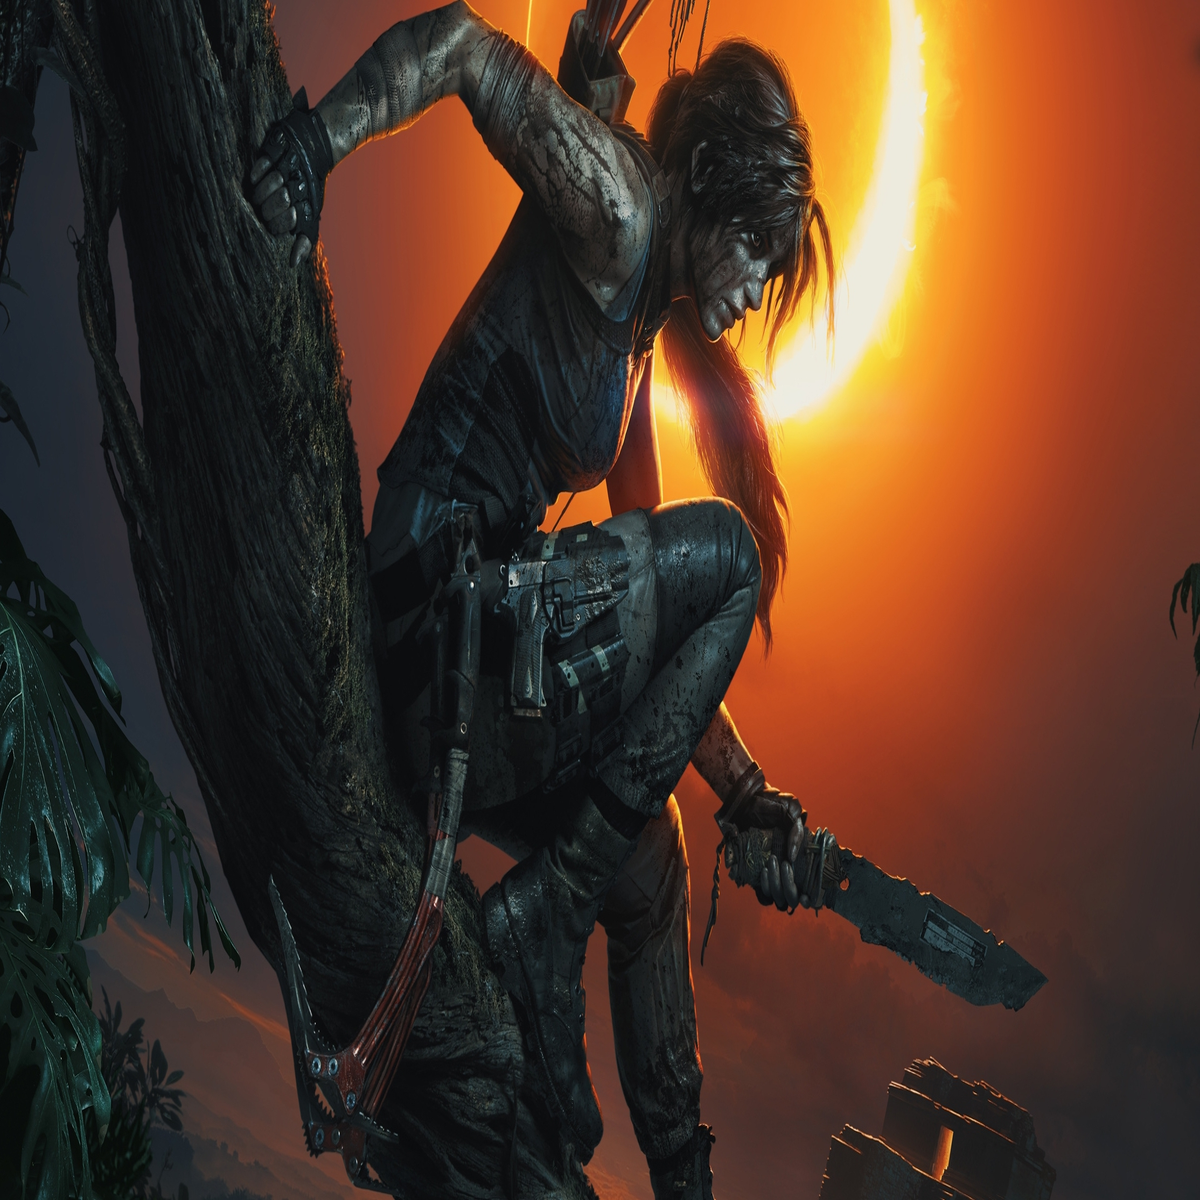 RUMOR] Elementos Sobrenaturais vão retornar em Tomb Raider 2! - LARA CROFT  PT: Fansite de Tomb Raider oficializado e premiado